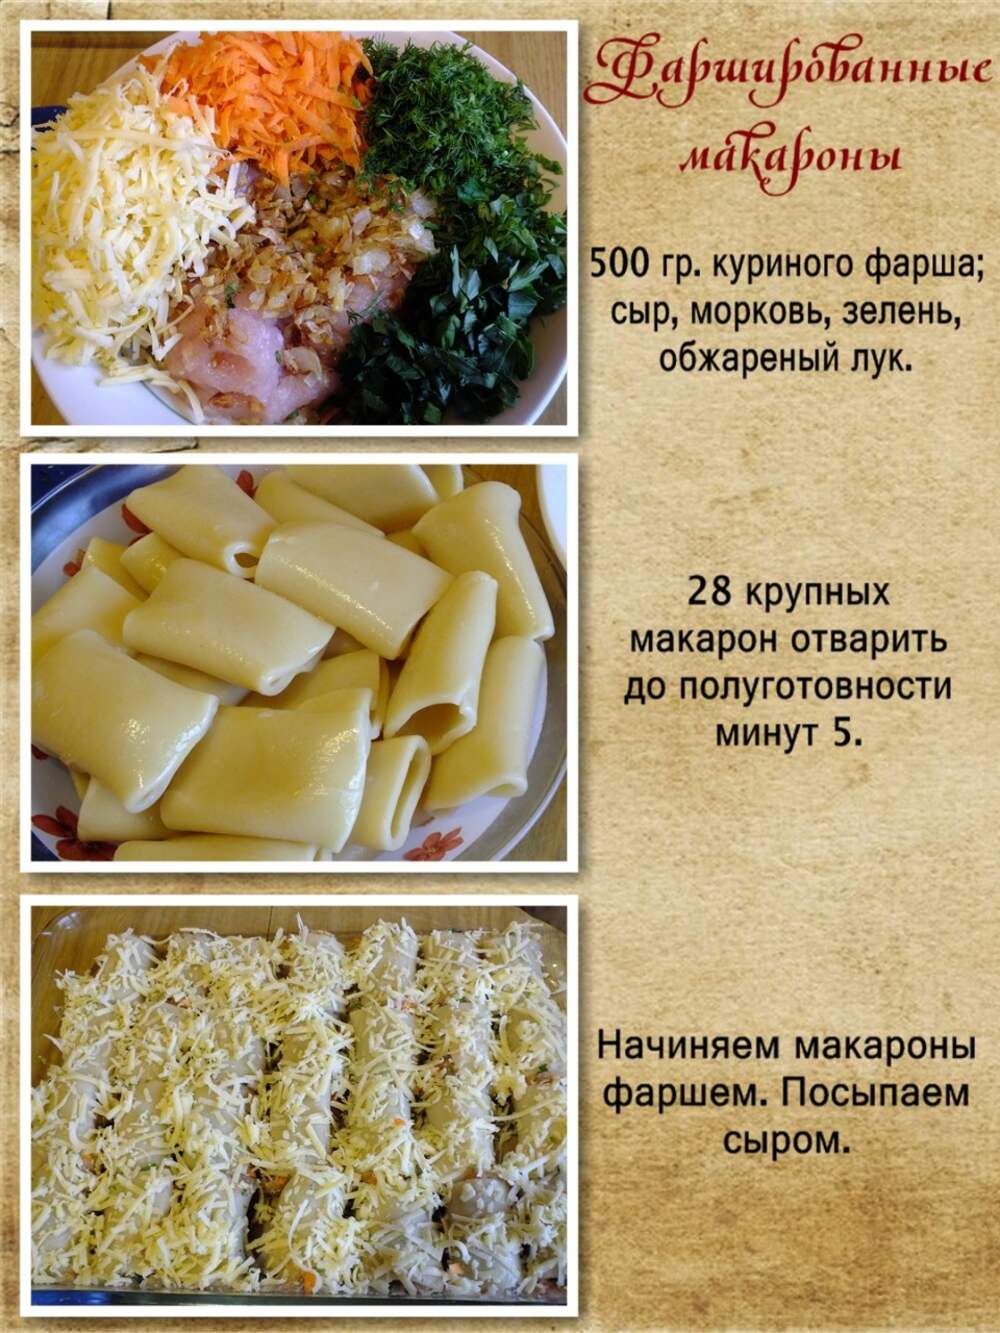 Блюда из макаронных изделий меню